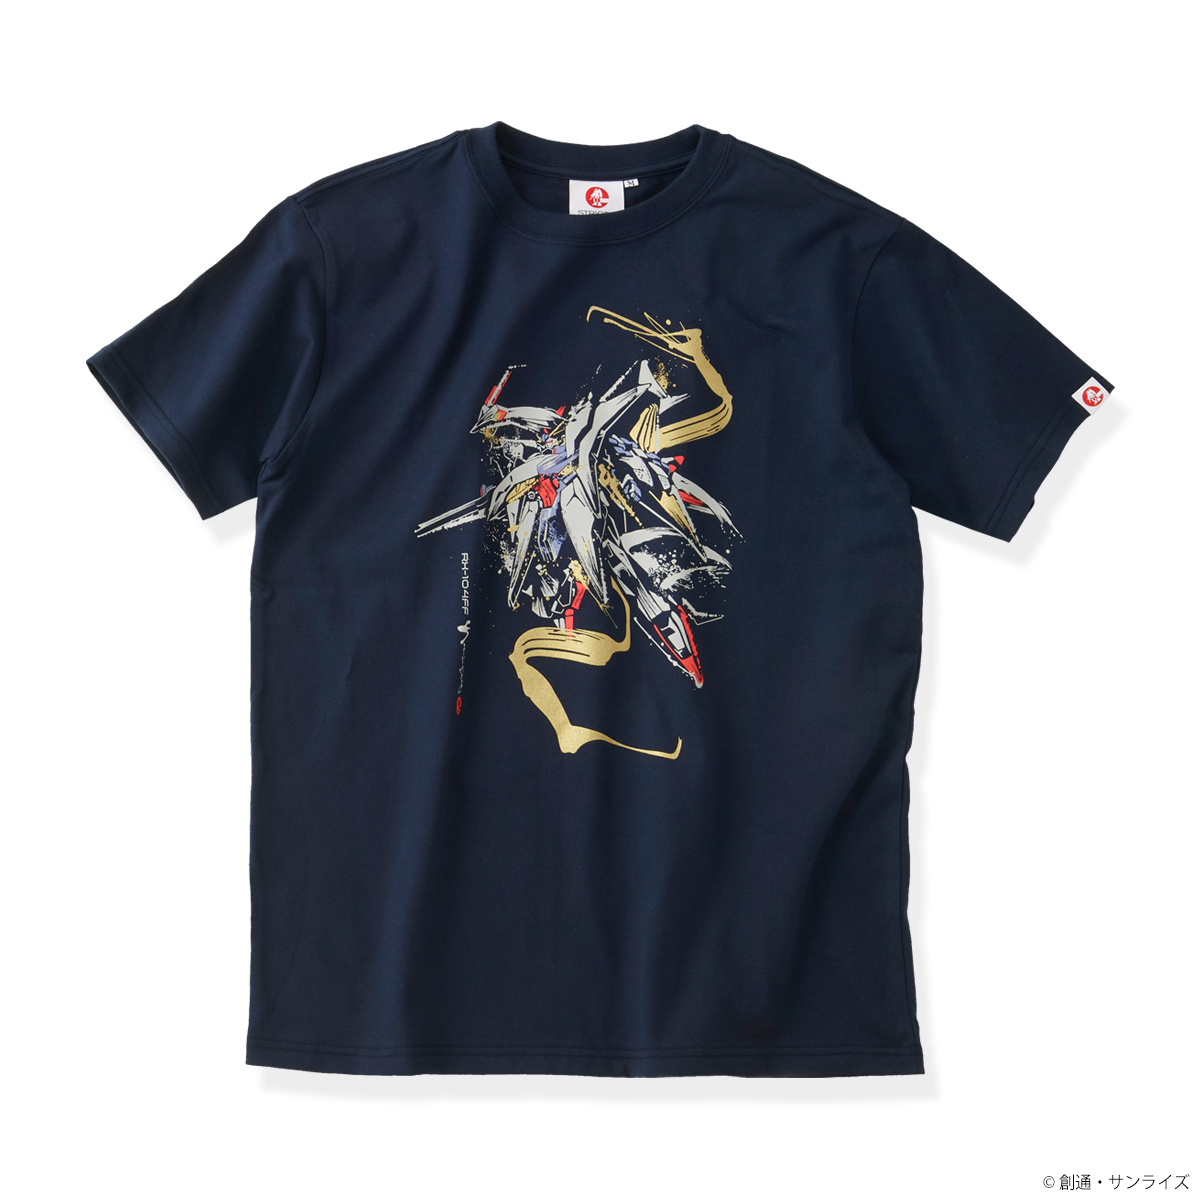 STRICT-G JAPAN 『機動戦士ガンダム 閃光のハサウェイ』 Tシャツ 筆絵風ペーネロペー